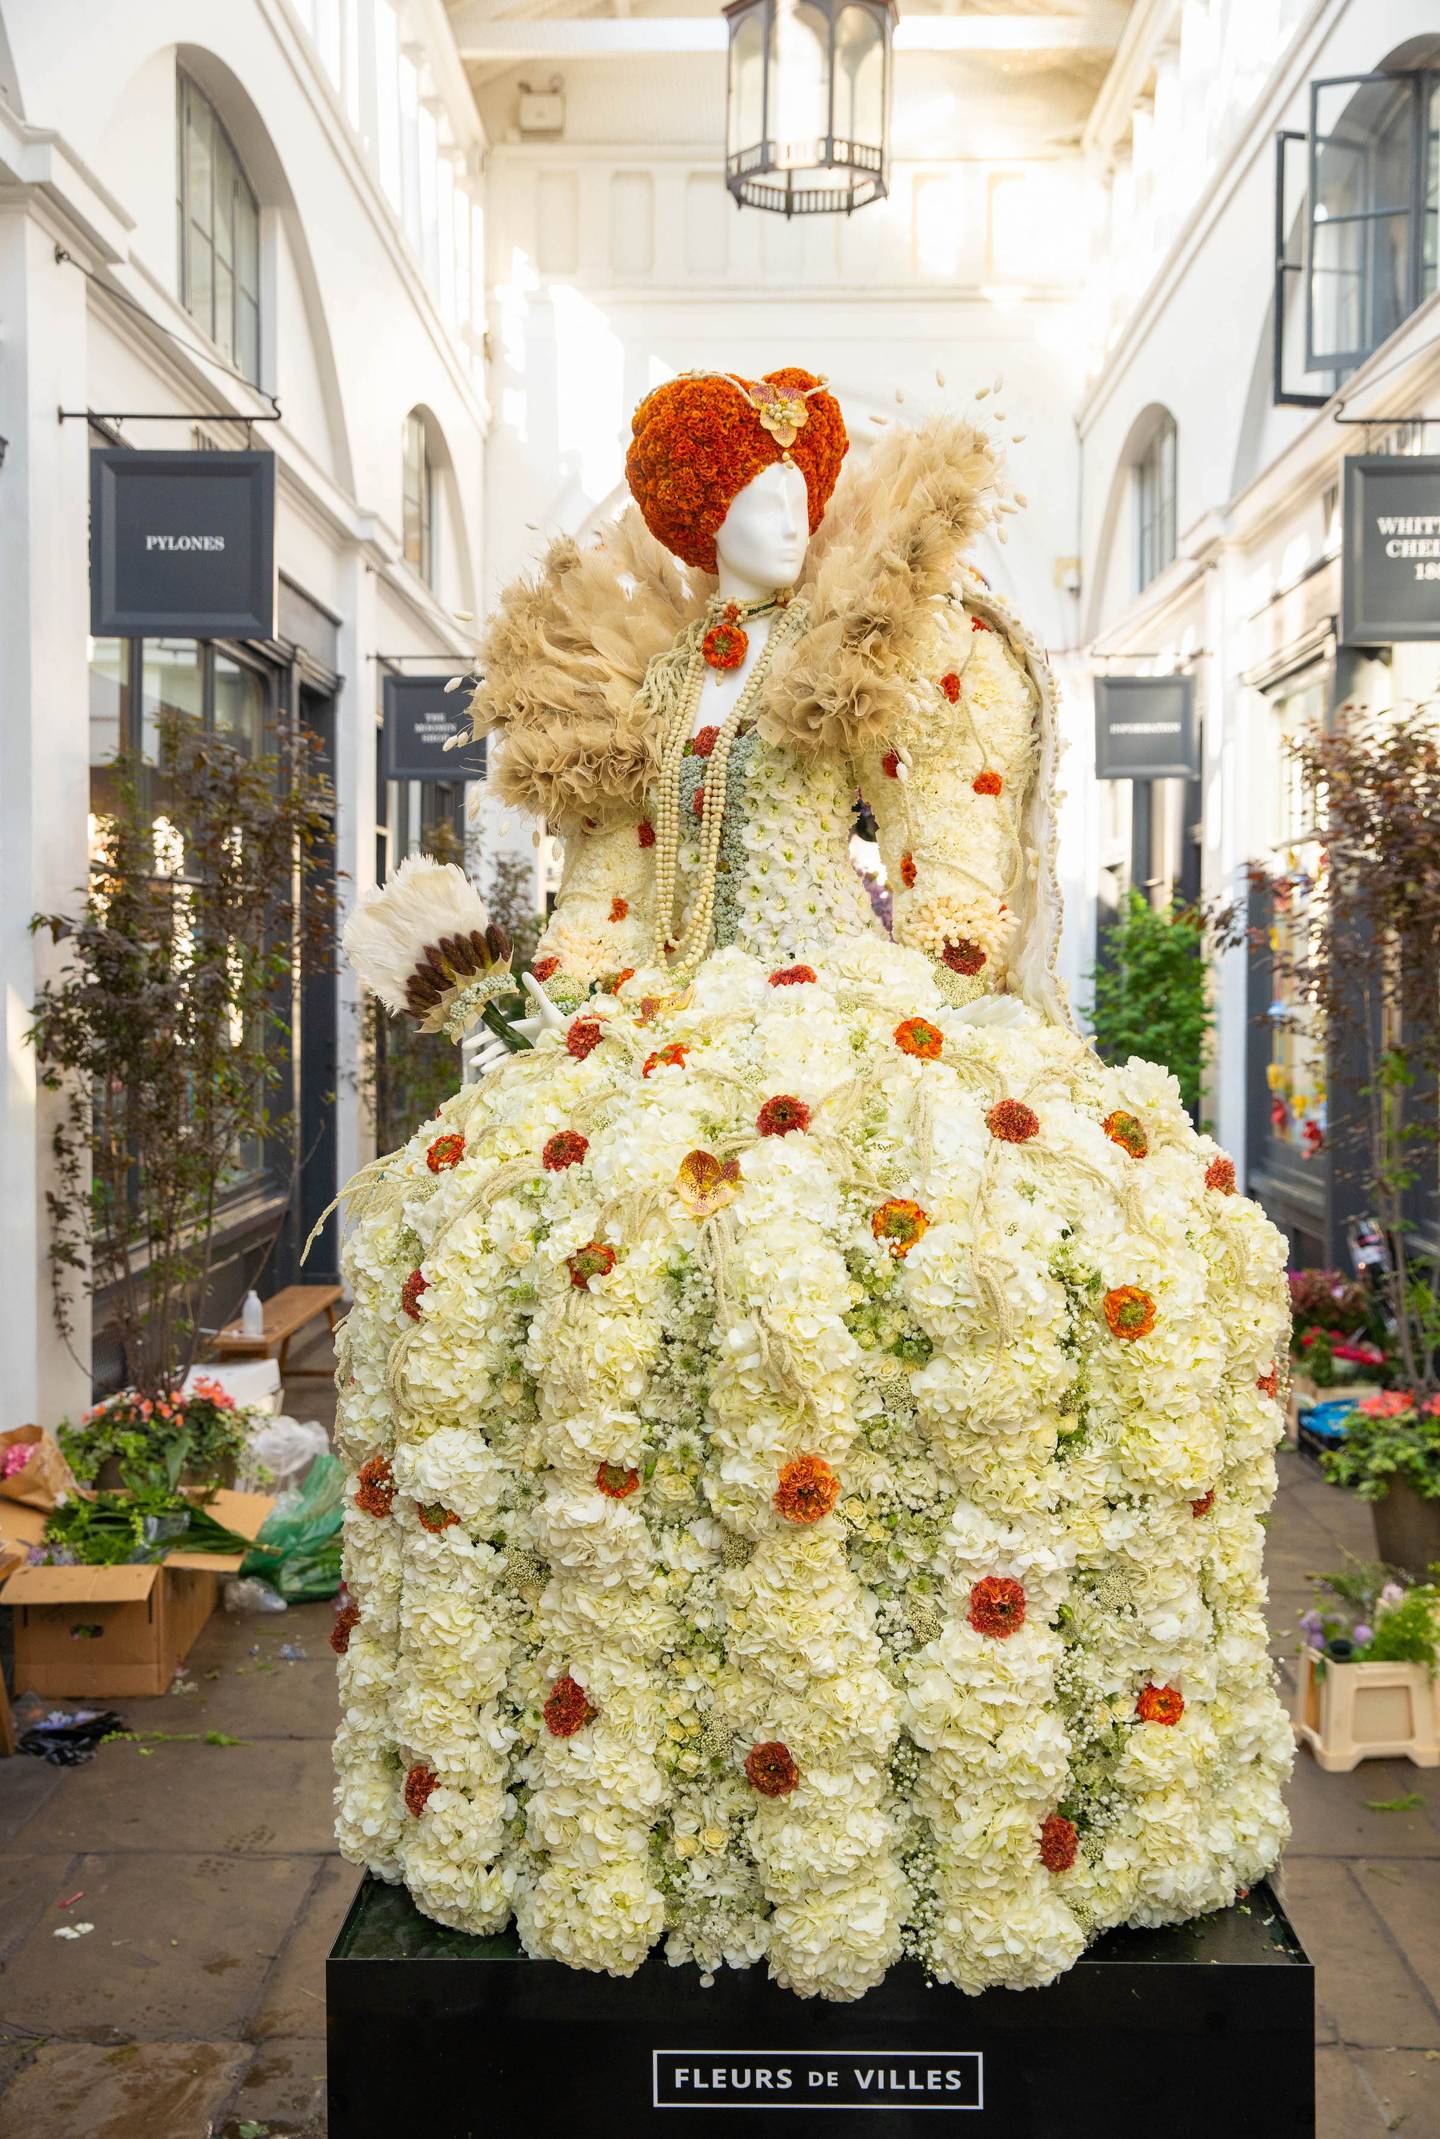 Chelsea Flower Show fringe events in London | House & Garden